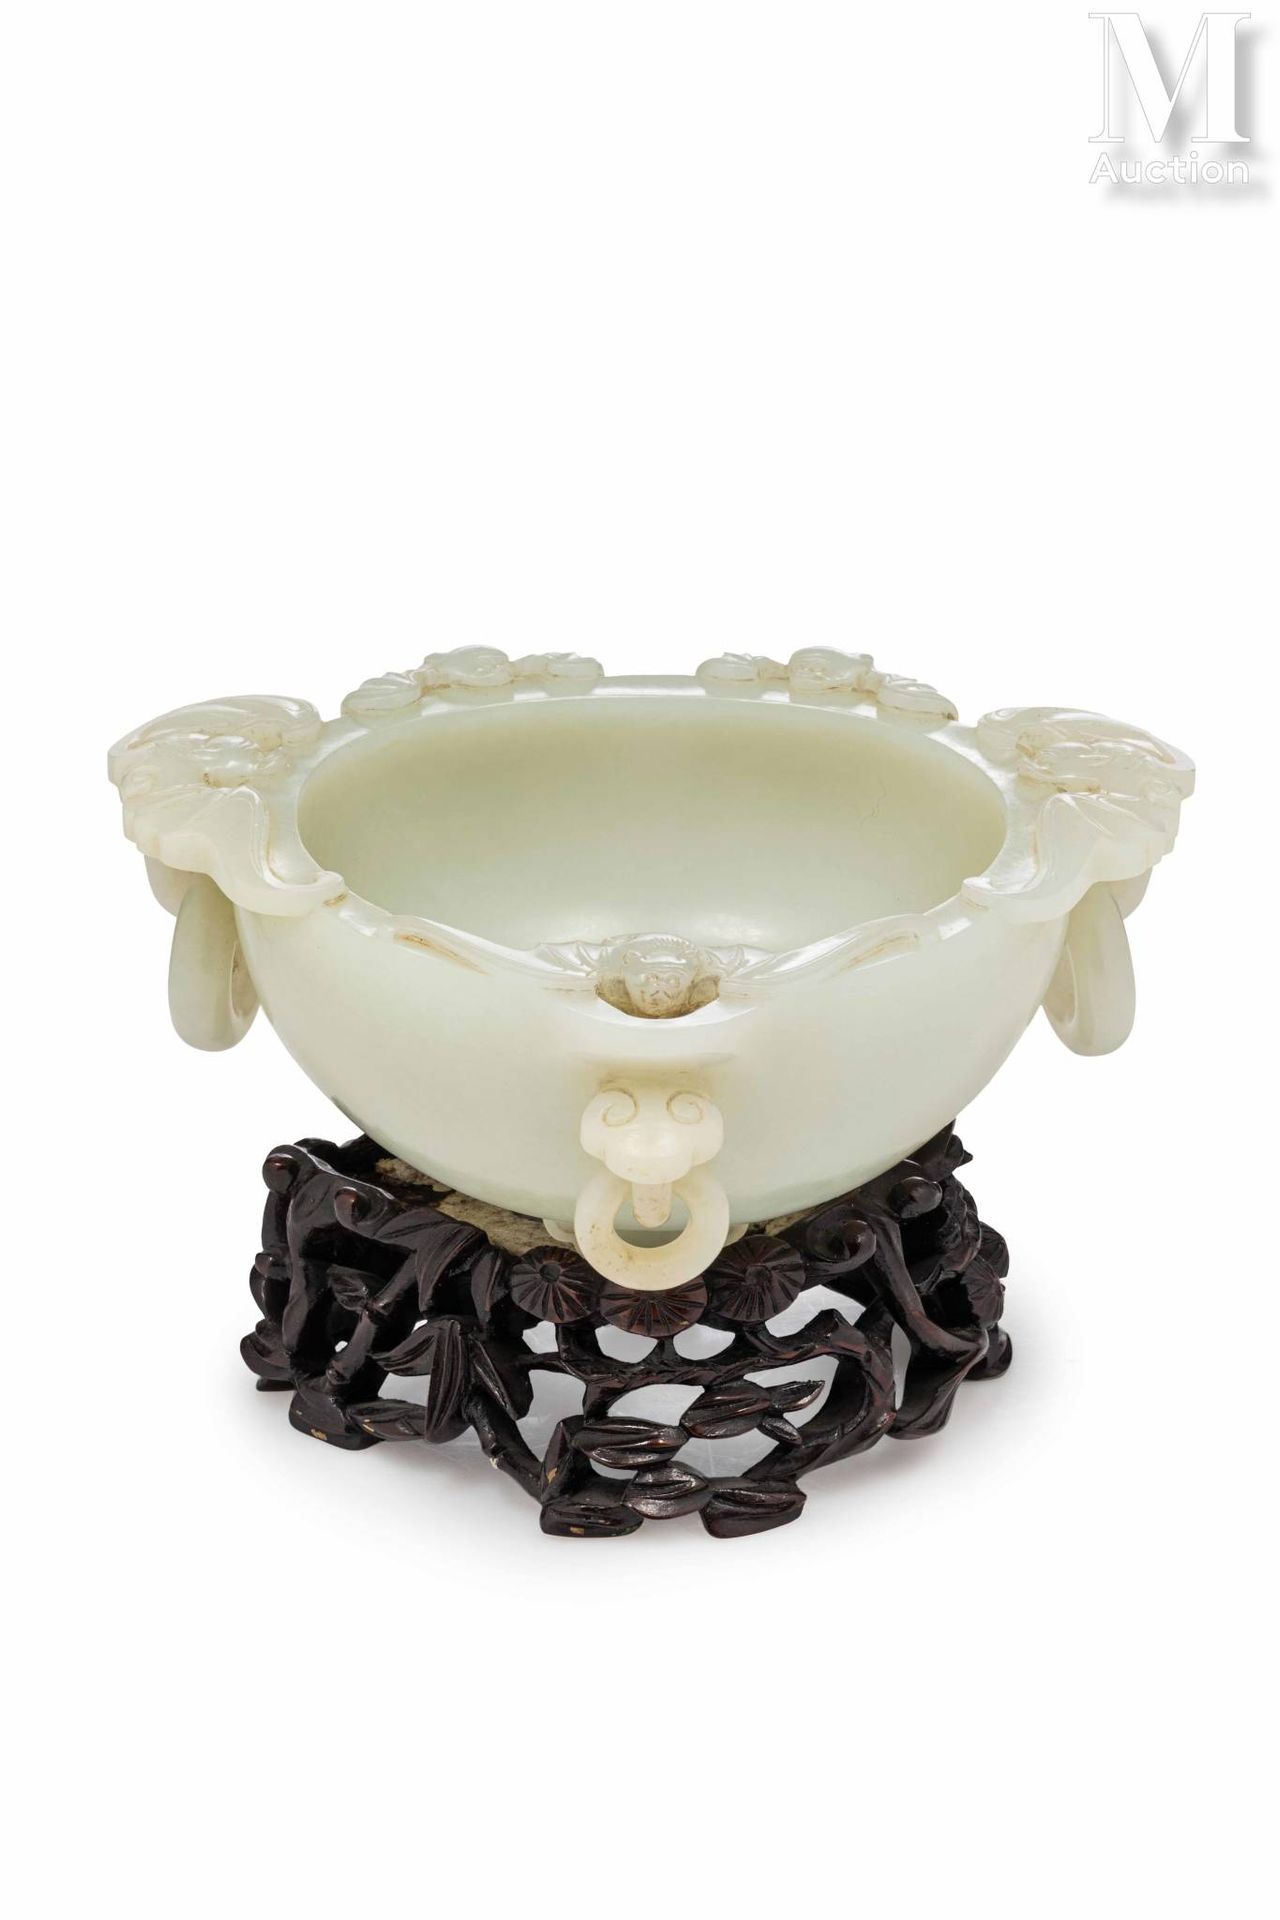 CHINE, Dynastie Qing Eleganter Jadebecher

Der seladonfarbene Stein ist kreisför&hellip;